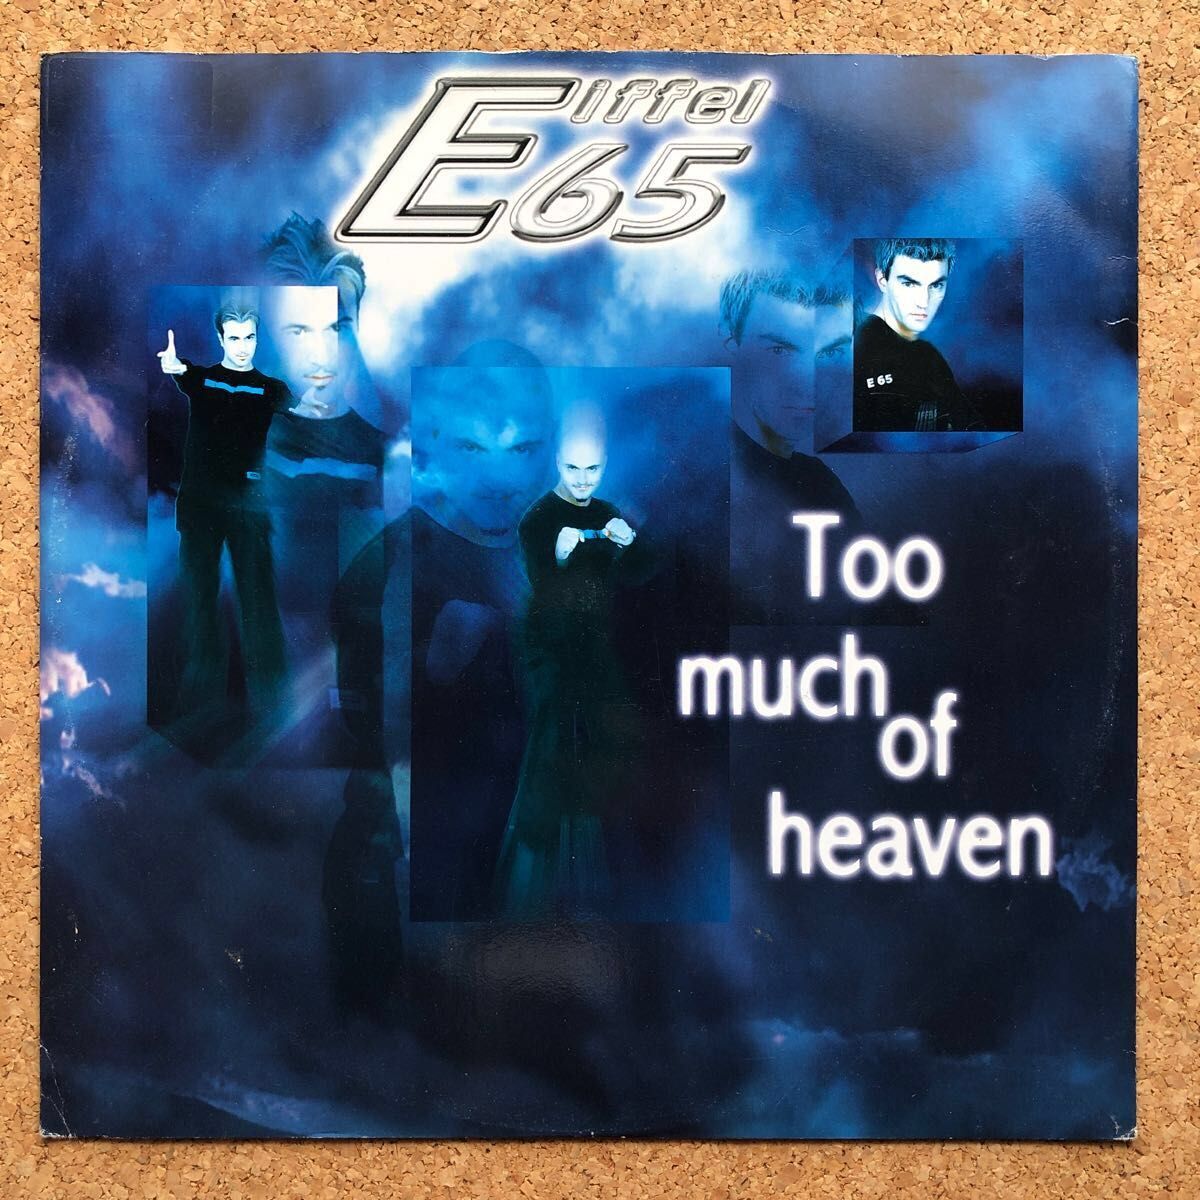 【r&b】Eiffel 65 / Too much of heaven［12inch］オリジナル盤《O-200》